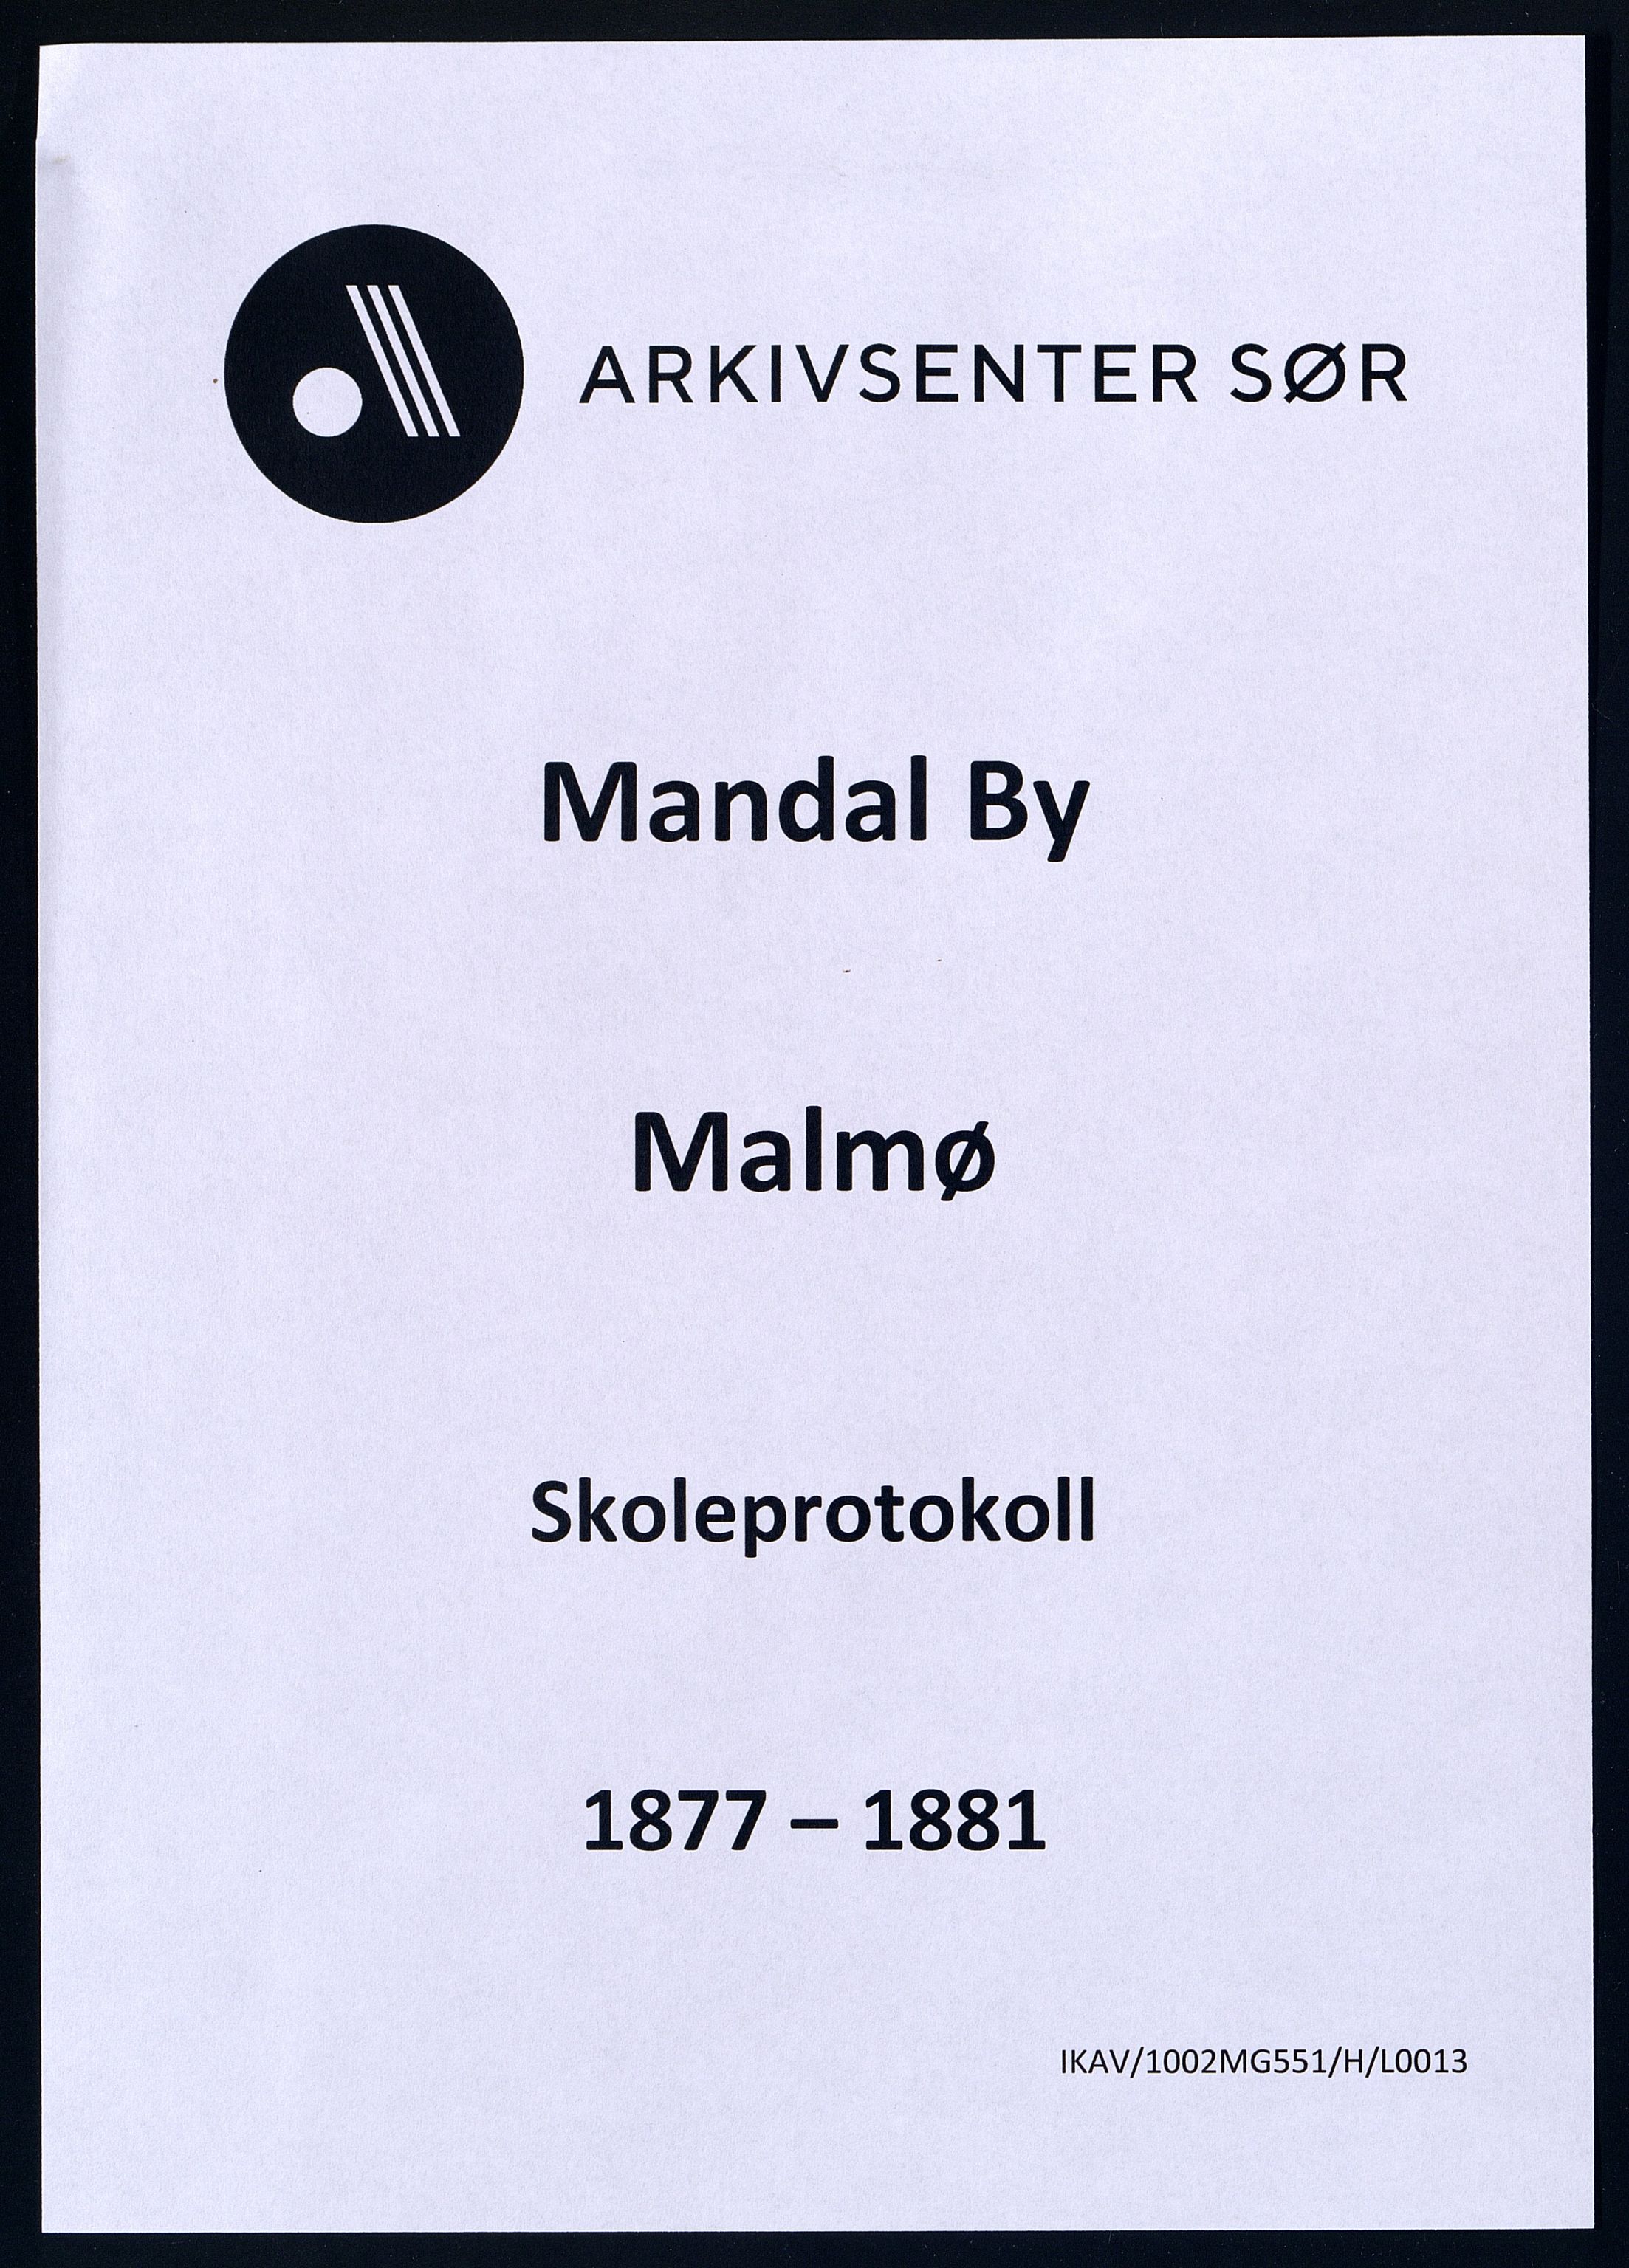 Mandal By - Mandal Allmueskole/Folkeskole/Skole, IKAV/1002MG551/H/L0013: Skoleprotokoll, 1877-1881